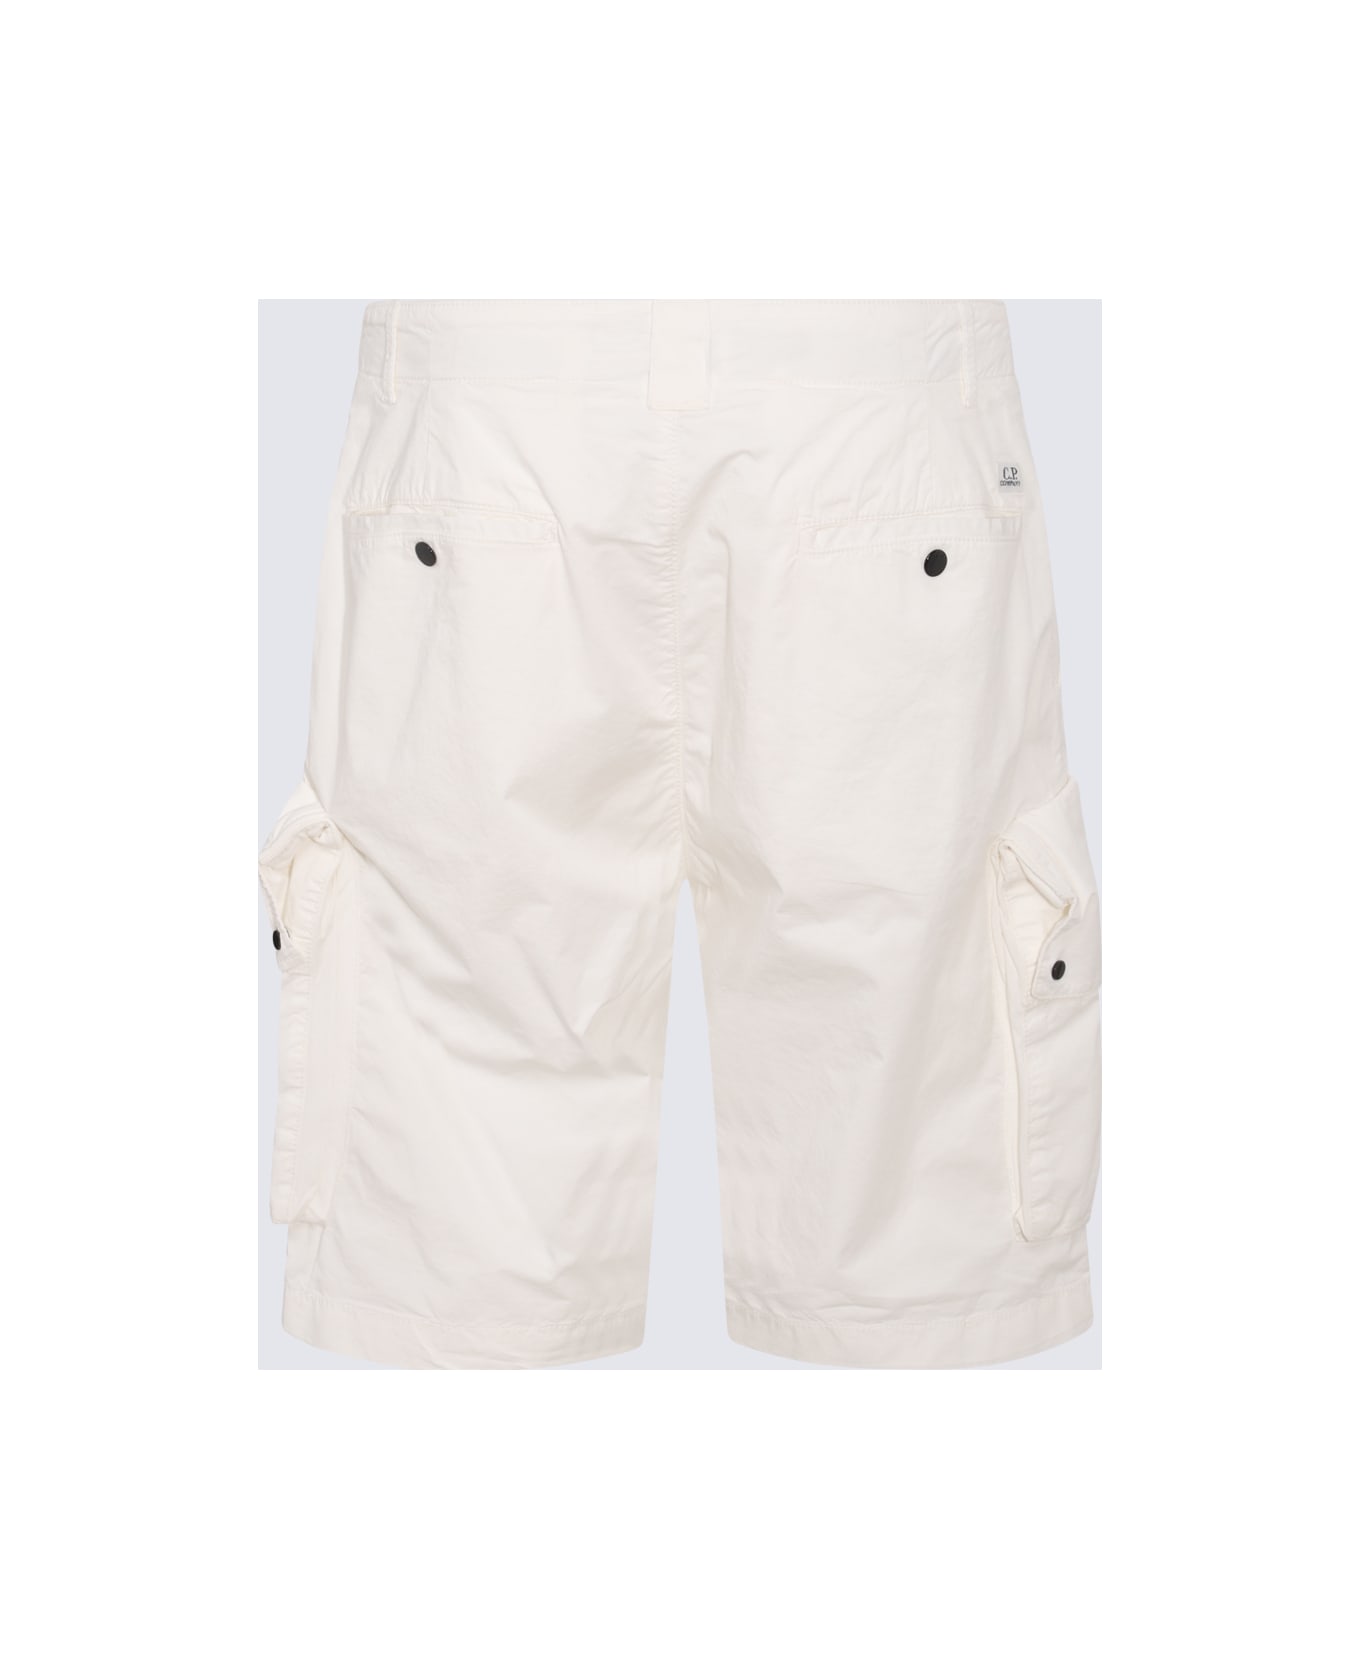 C.P. Company Gauze White Cotton Cargo Shorts - GAUZEWHITE